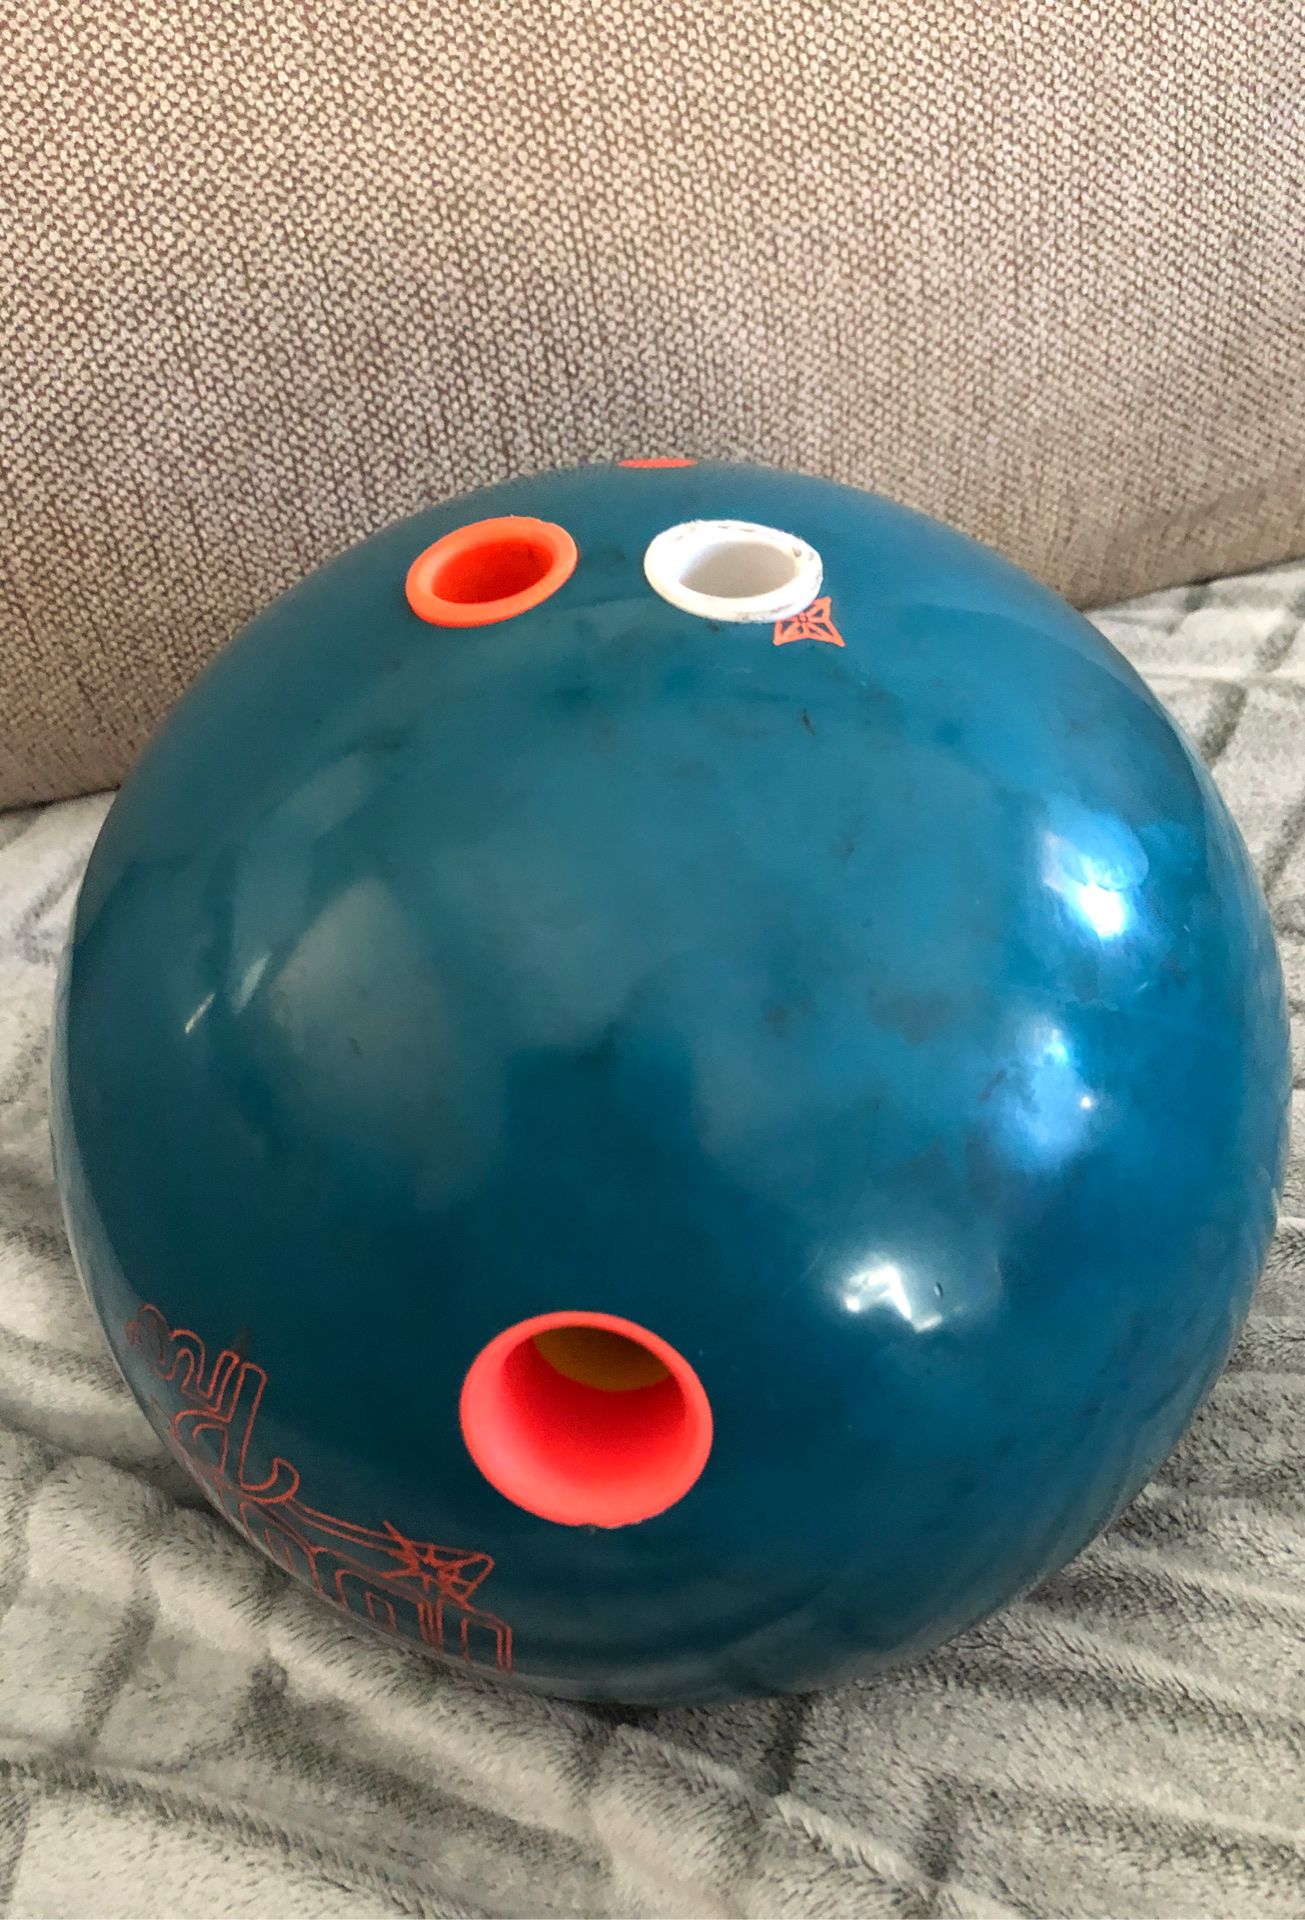 Rotor grip idol pro bowling ball 12 pounds